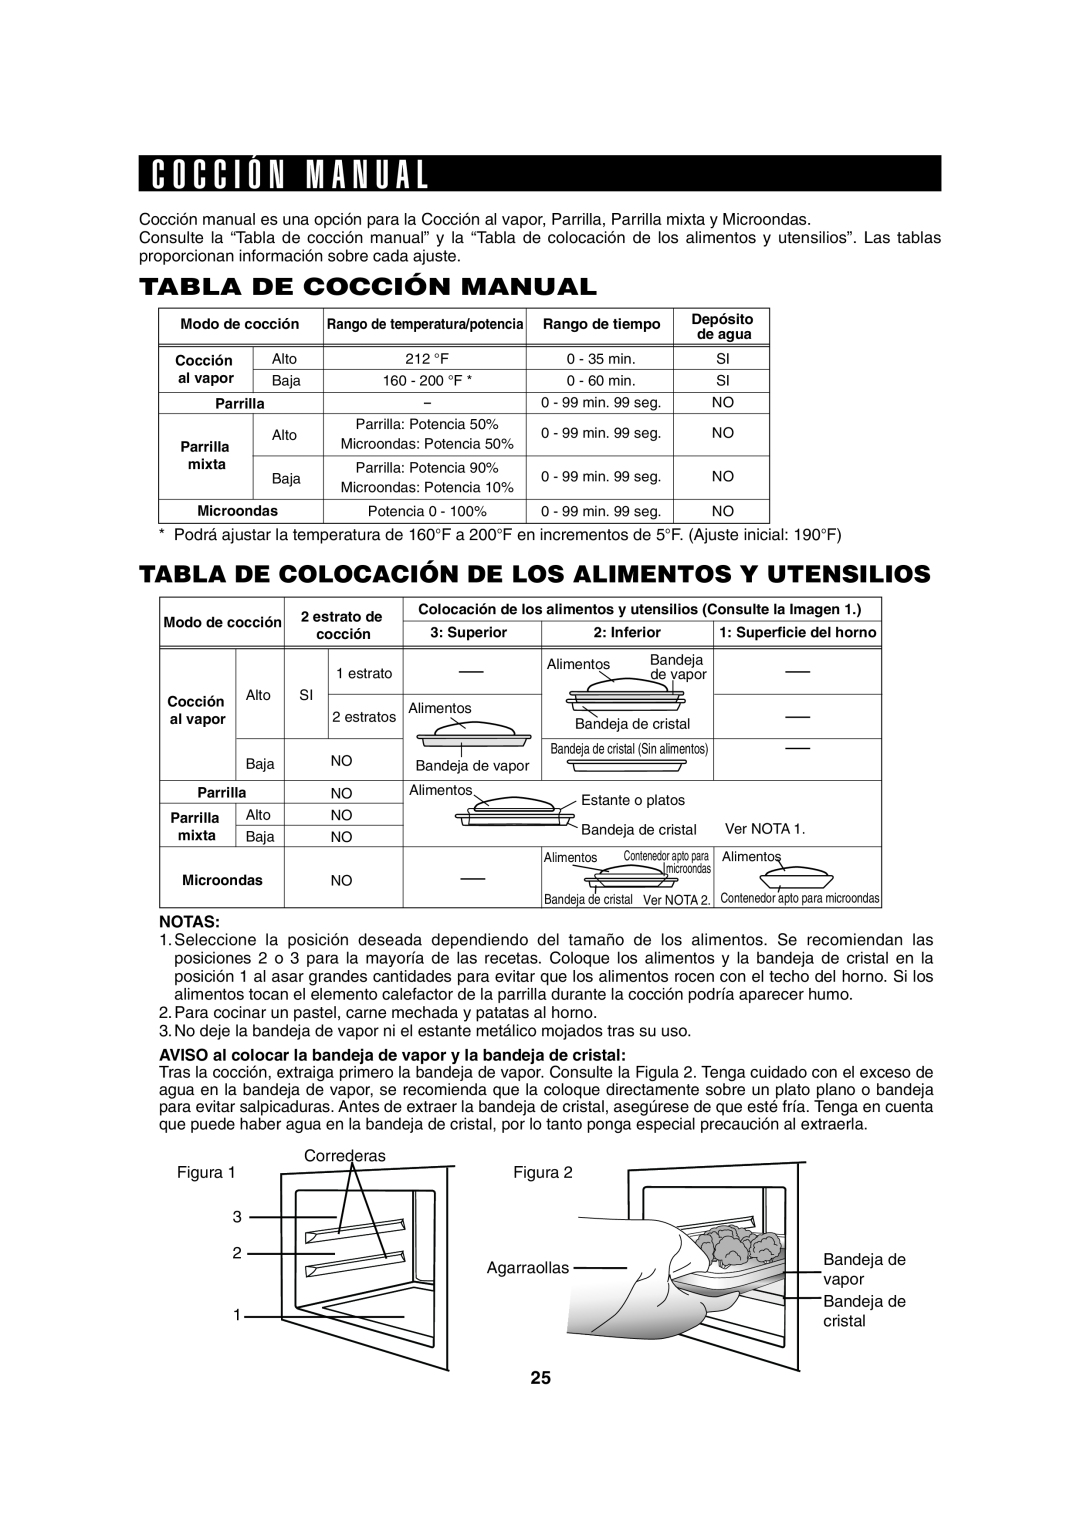 Sharp AX-1100R C O C C I Ó N M A N U A L, Tabla De Cocción Manual, Tabla De Colocación De Los Alimentos Y Utensilios 